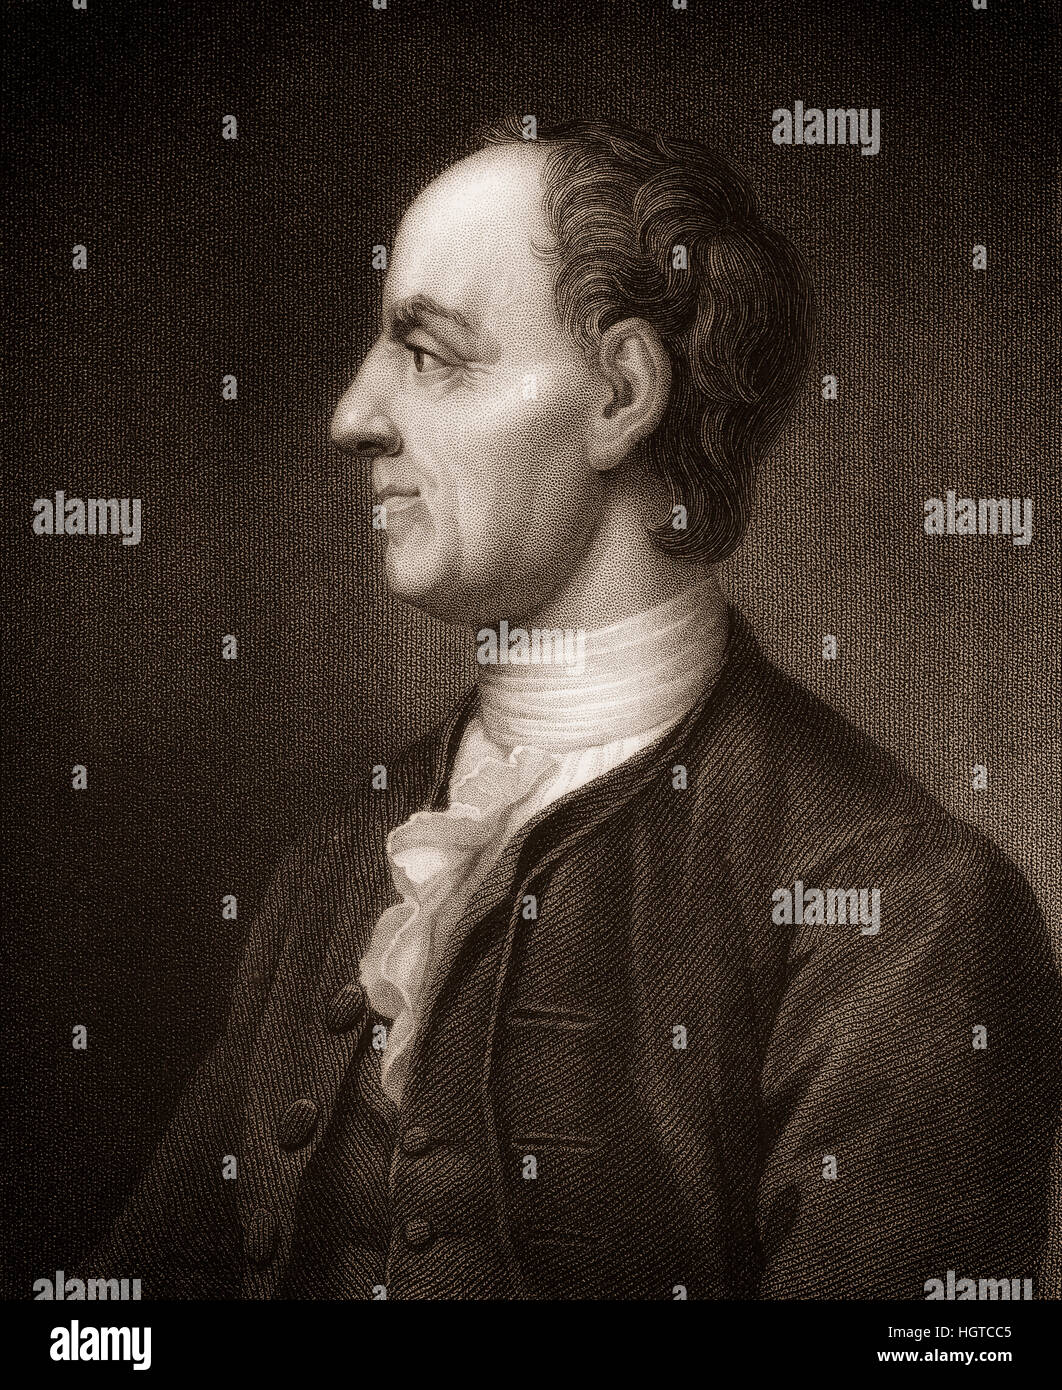 Leonhard Euler, 1707 - 1783, un matematico svizzero e fisico, Leonhard Euler, 1707 - 1783, ein Schweizer Mathematiker Foto Stock